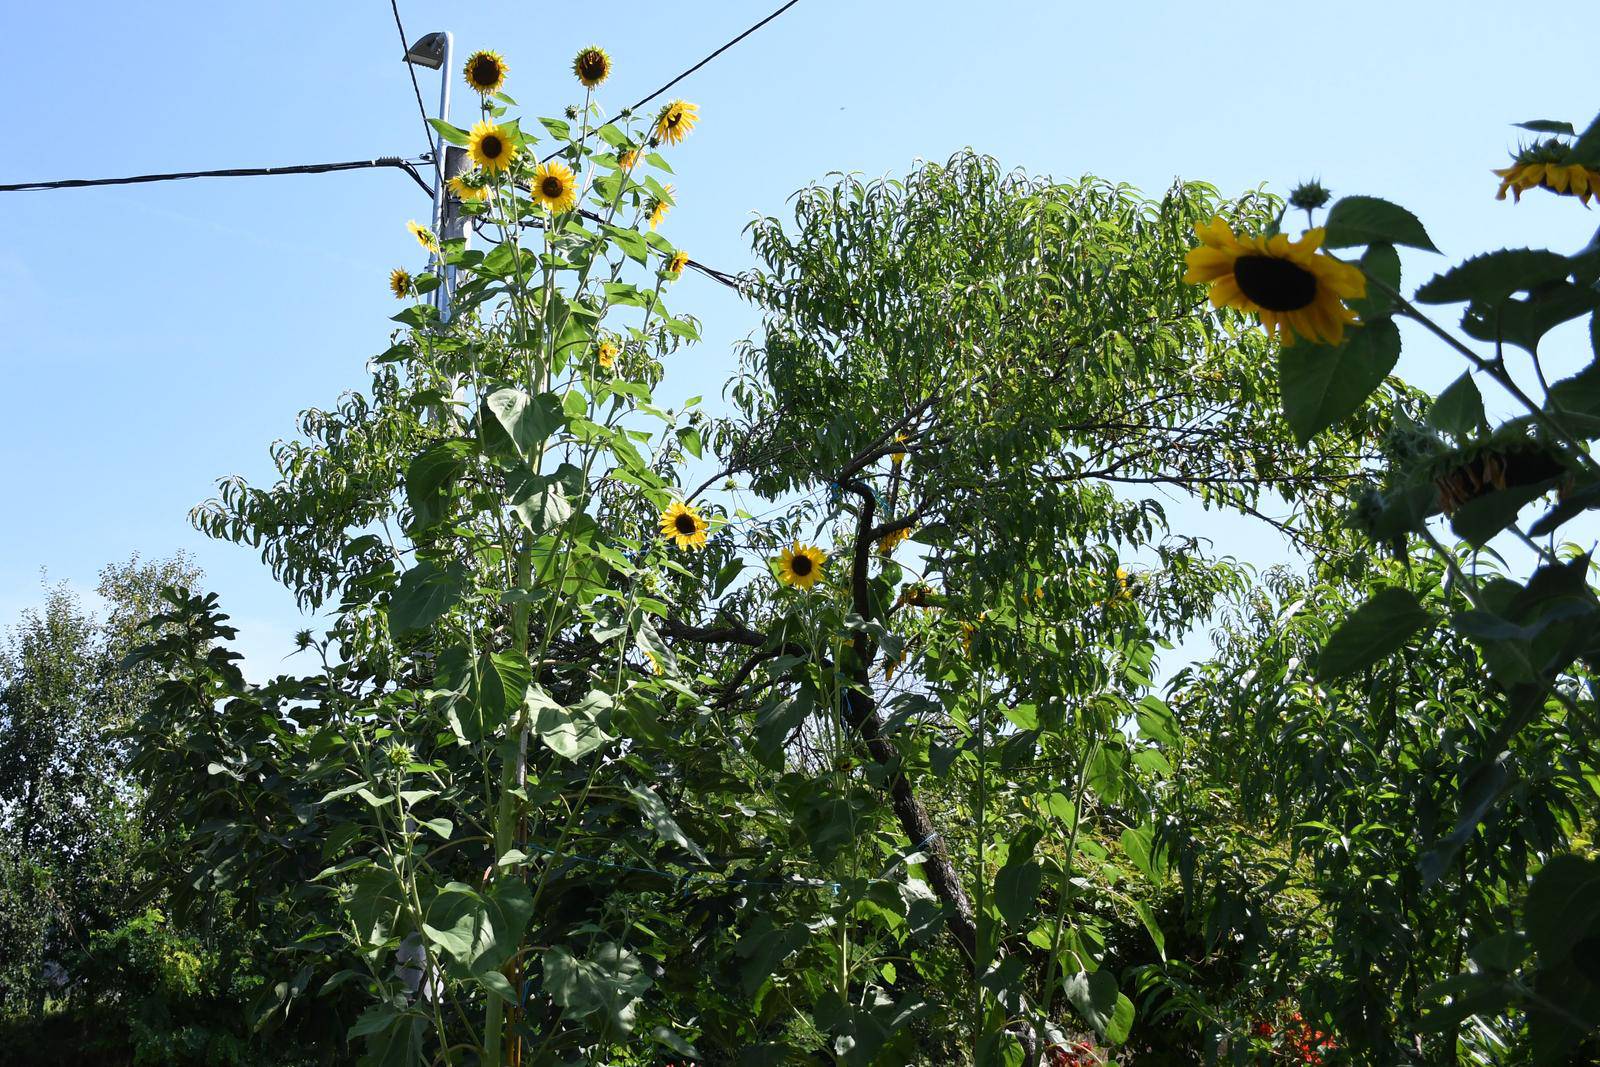 Daruvar: Obitelj Krajnović uzgojila divovski suncokret